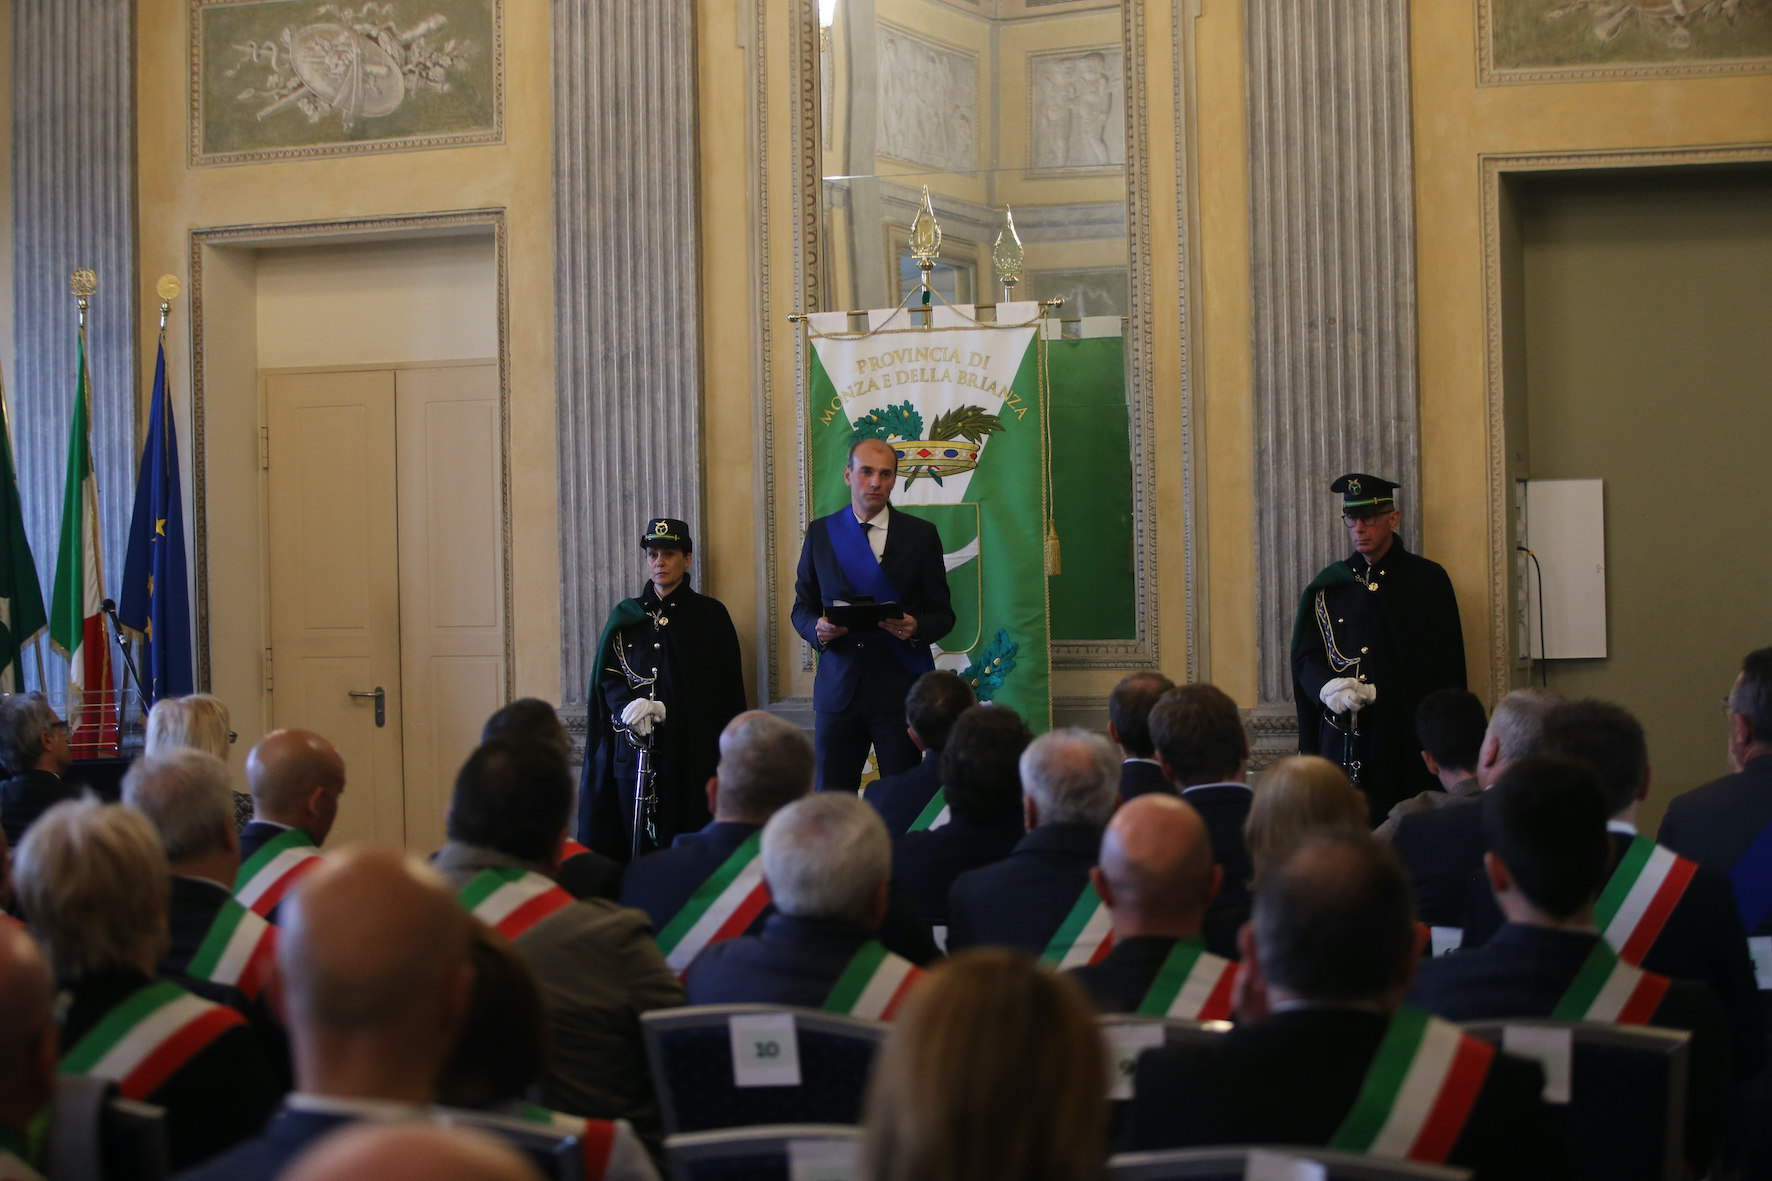 Cerimonia della Provincia in Villa reale: il presidente Luca Santambrogio